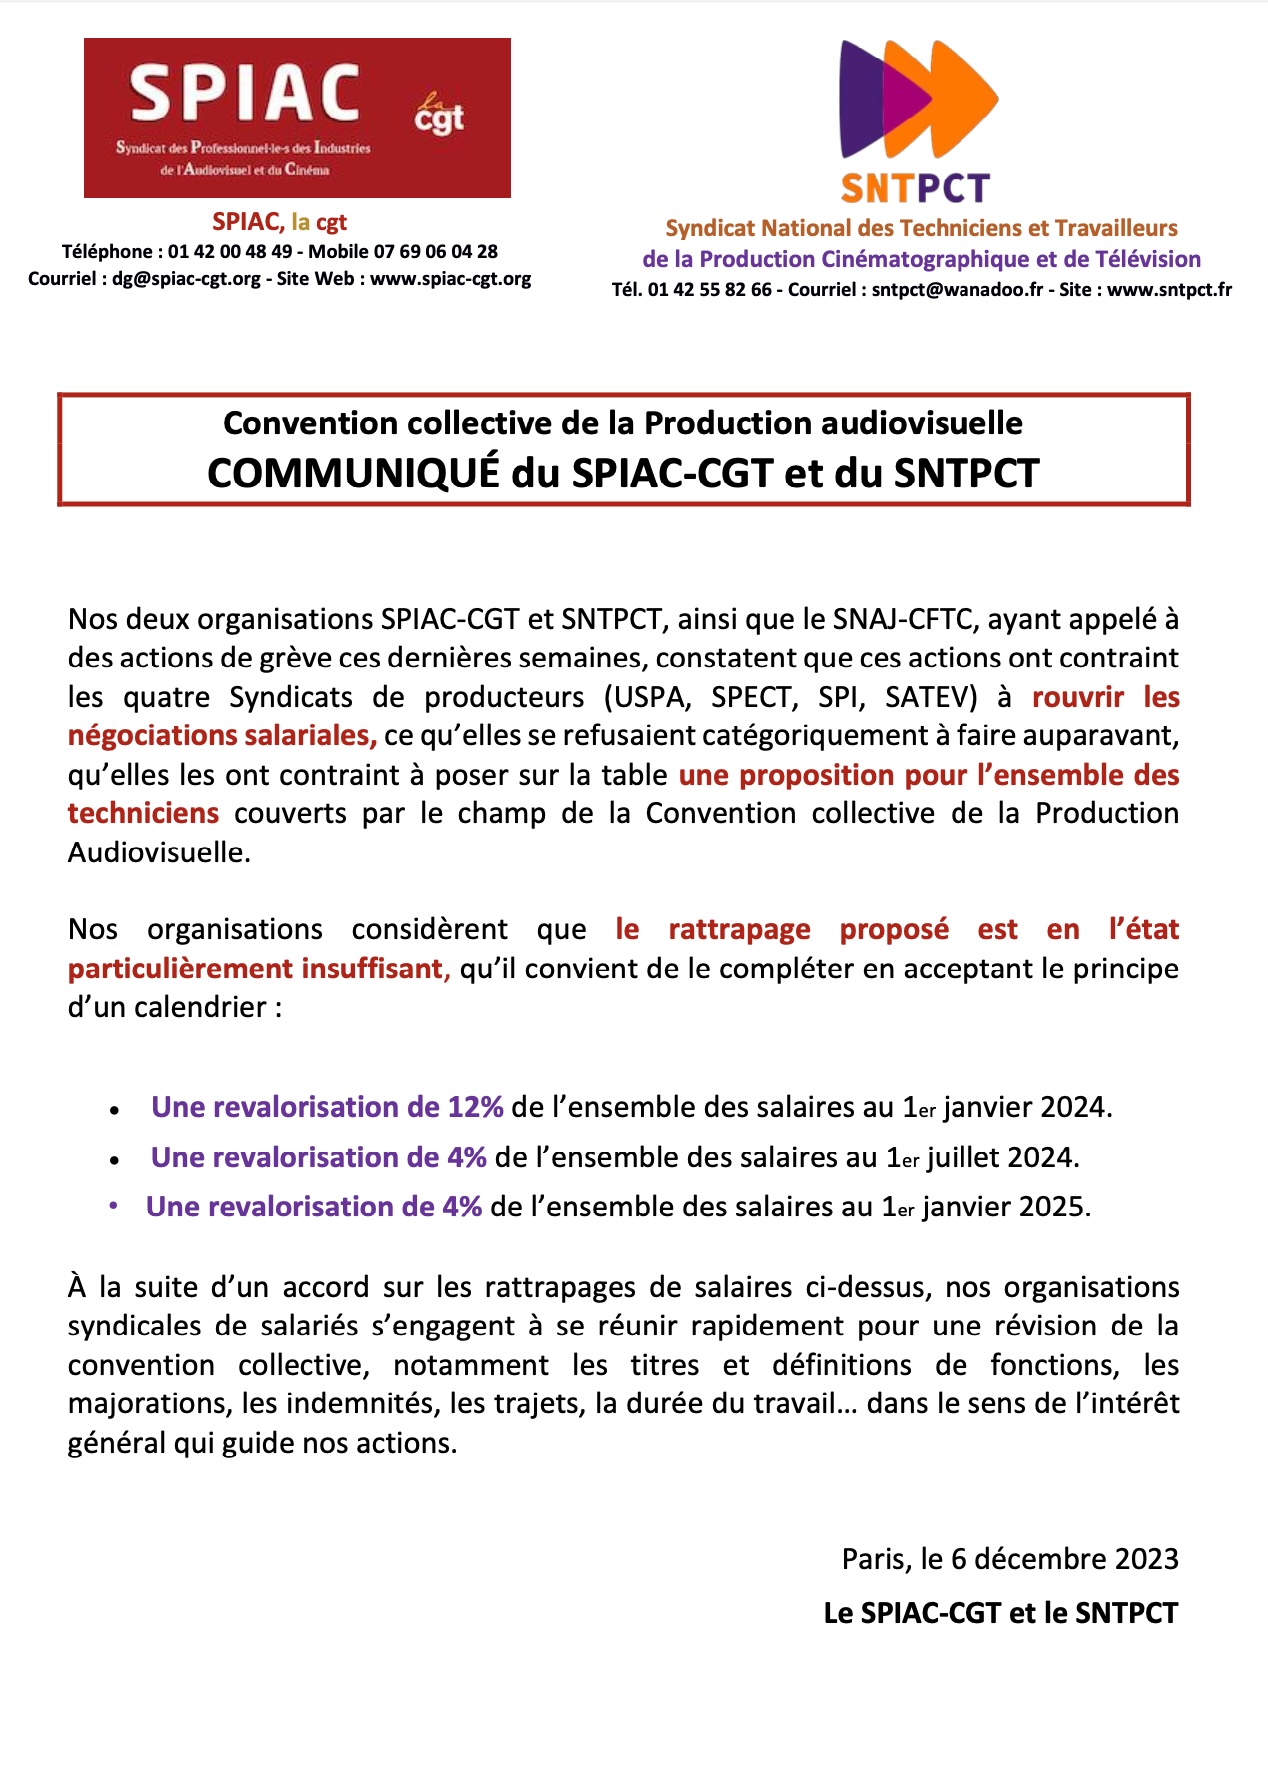 Communiqué SPIAC-CGT SNTPCT du 6 décembre 2023